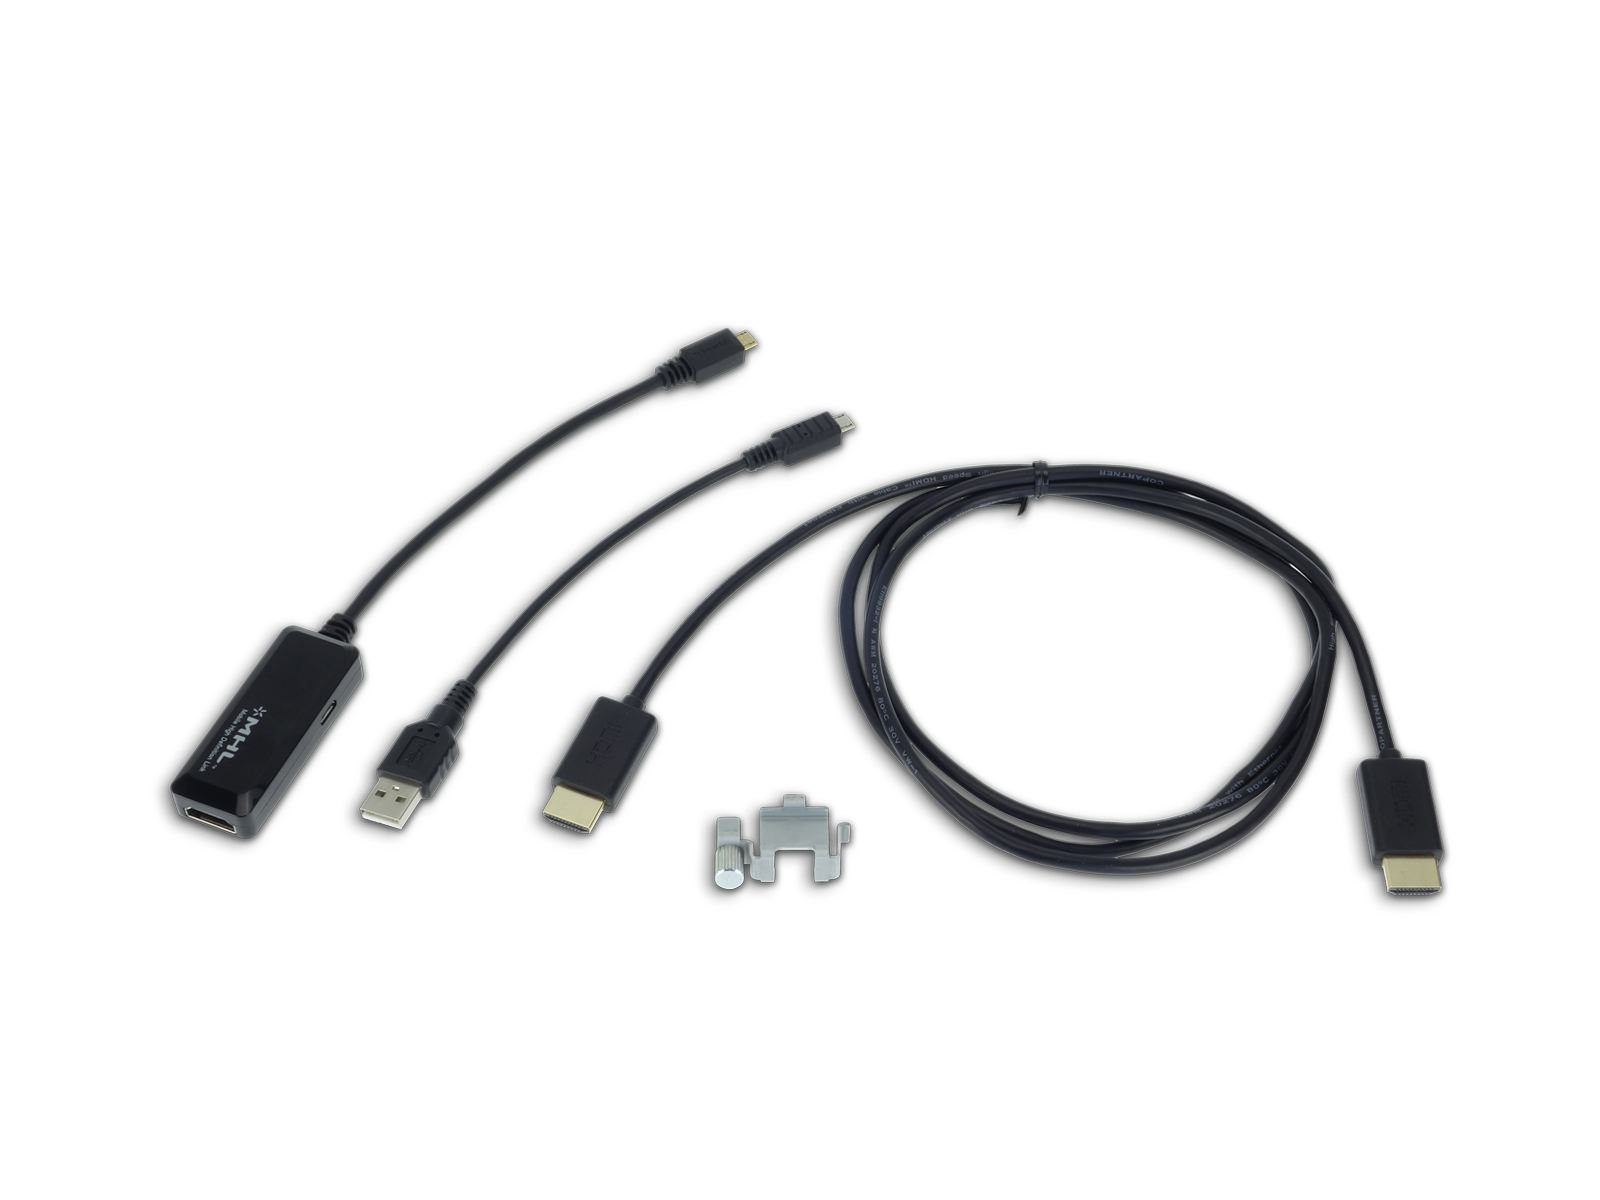 Alpine KCU-610MH 1,5 m HDMI-Kabel mit MHL-Anschluss für Smartphones